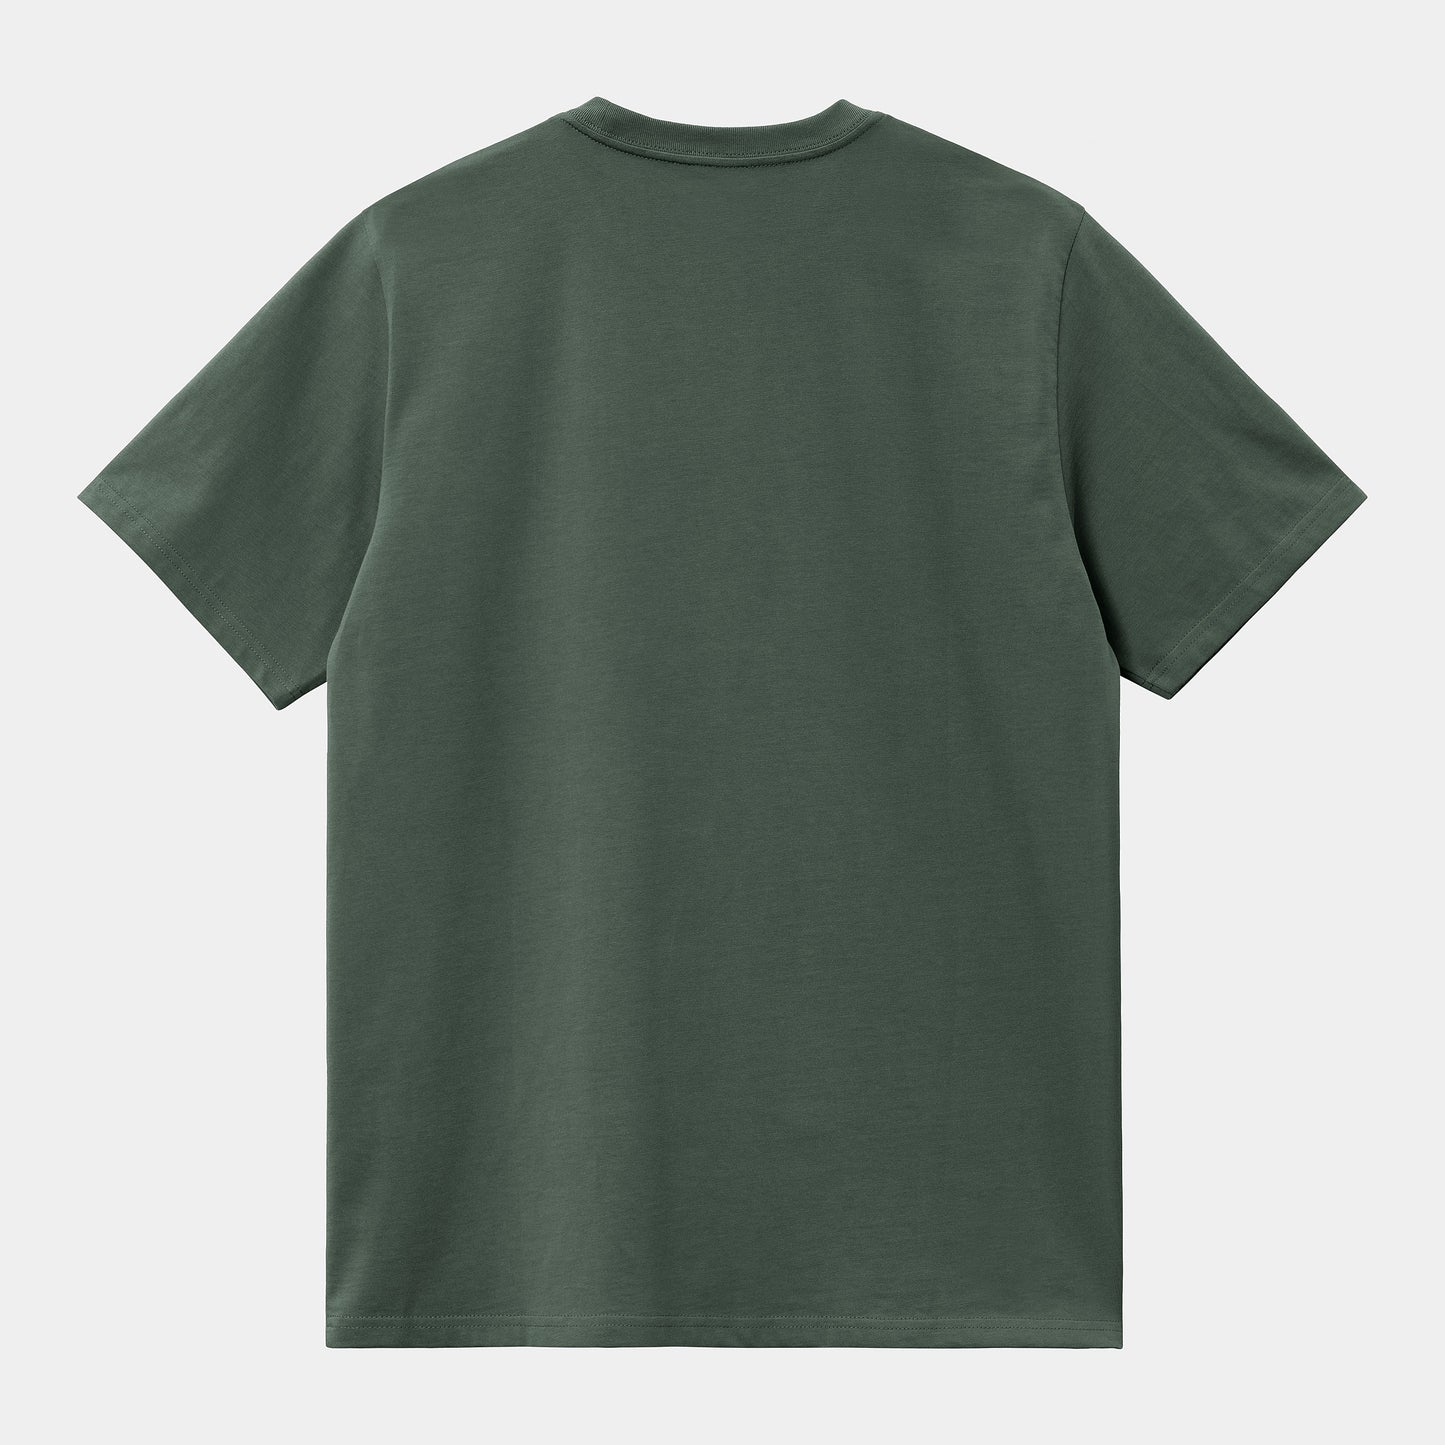 T-Shirt Carhartt Wip Jura da Uomo i030434